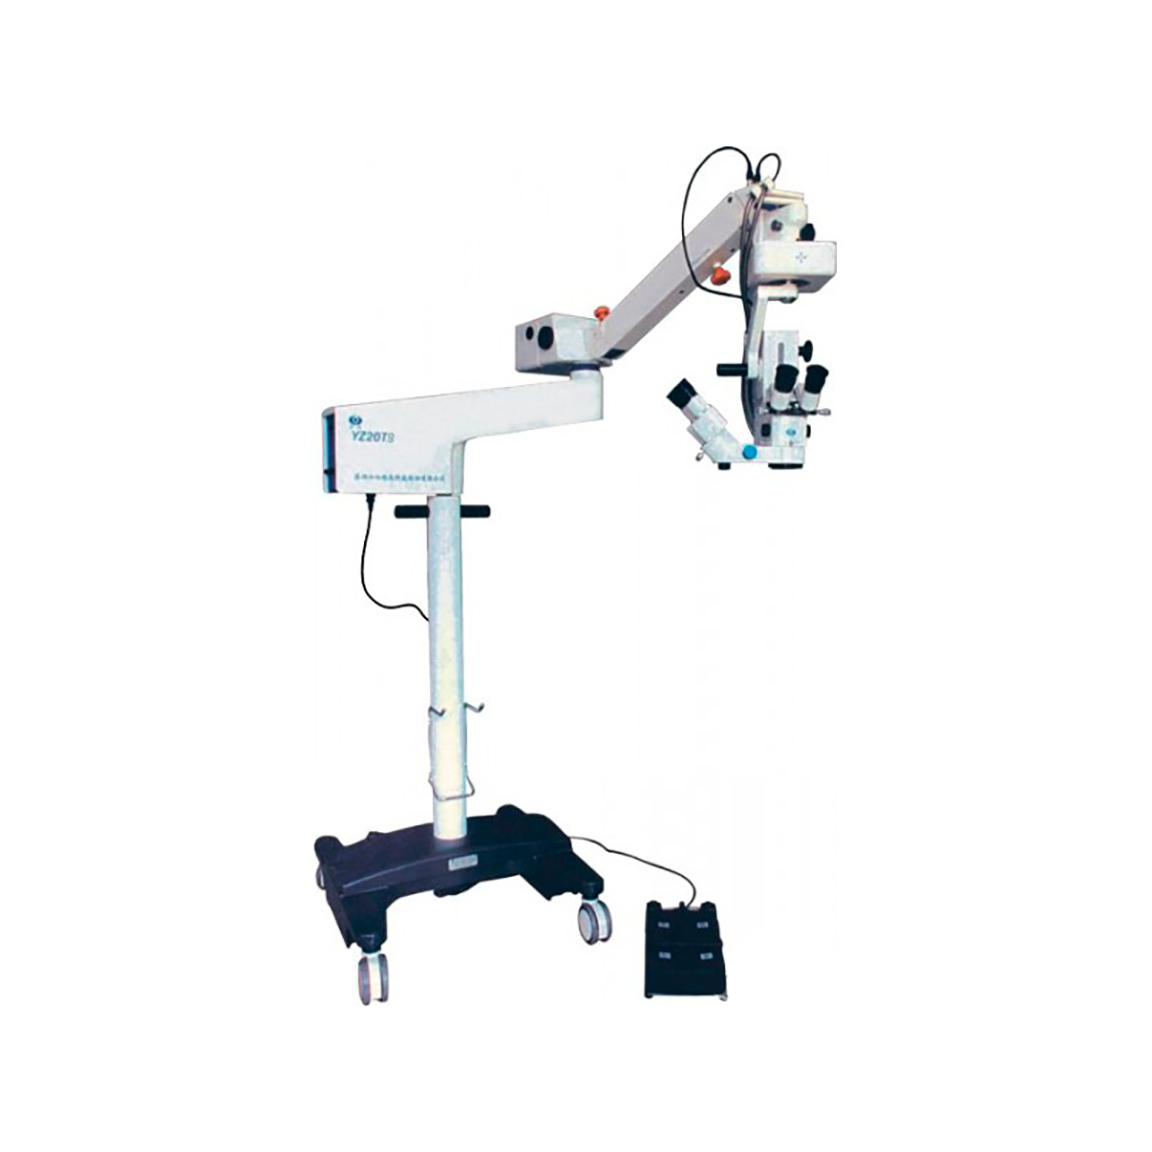 Операционный микроскоп YZ20T9 с микроскопом ассистента X/Y перемещением (оптика Carl Zeiss)